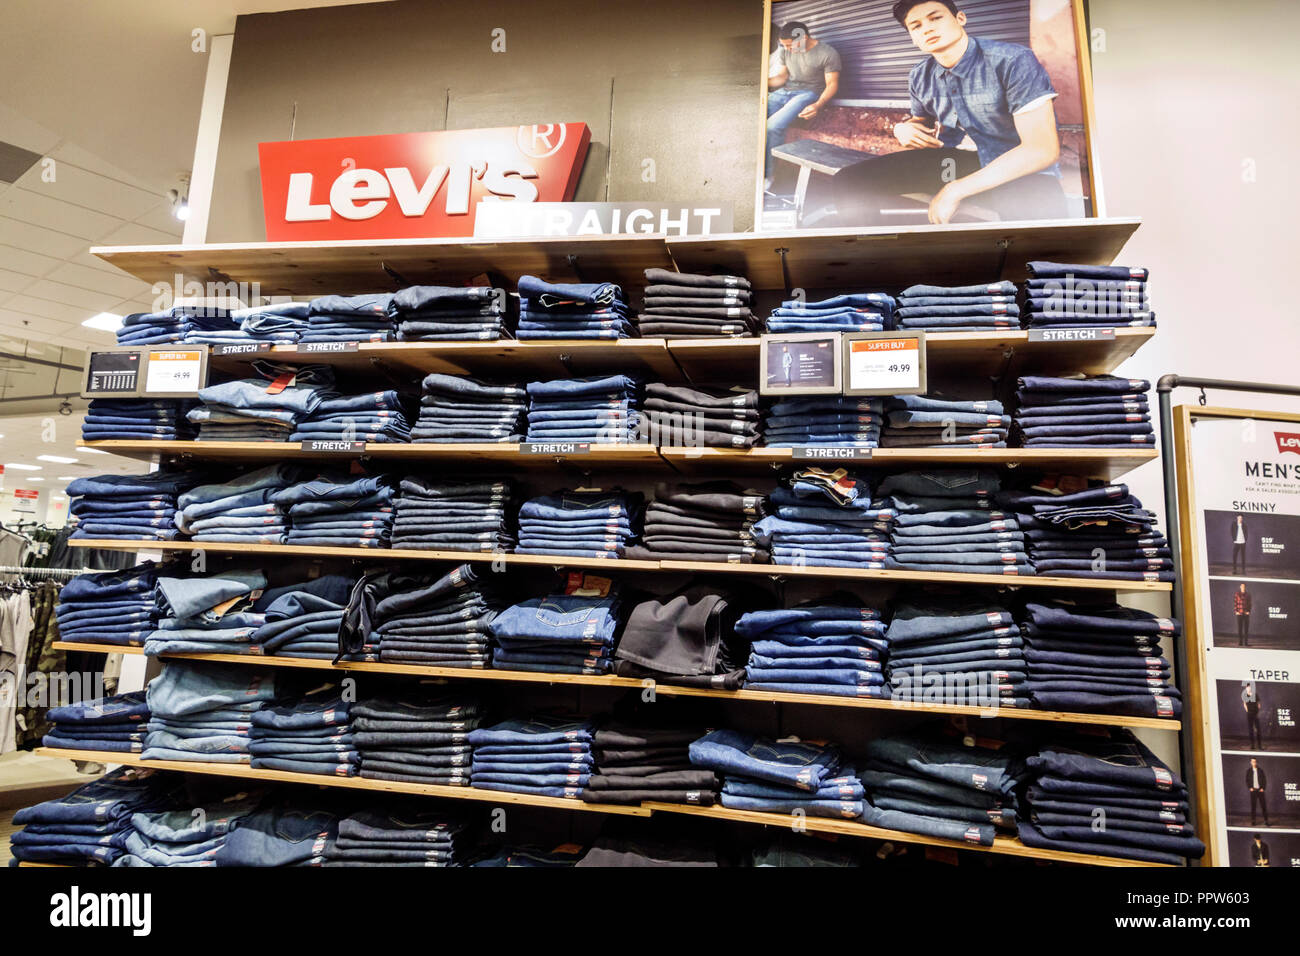 Miami Florida,Kendall,Dadeland mall,Macy's grandes  almacenes,interior,productos venta de la exhibición,Levi's denim  jeans,hombres,visitantes travel tra Fotografía de stock - Alamy